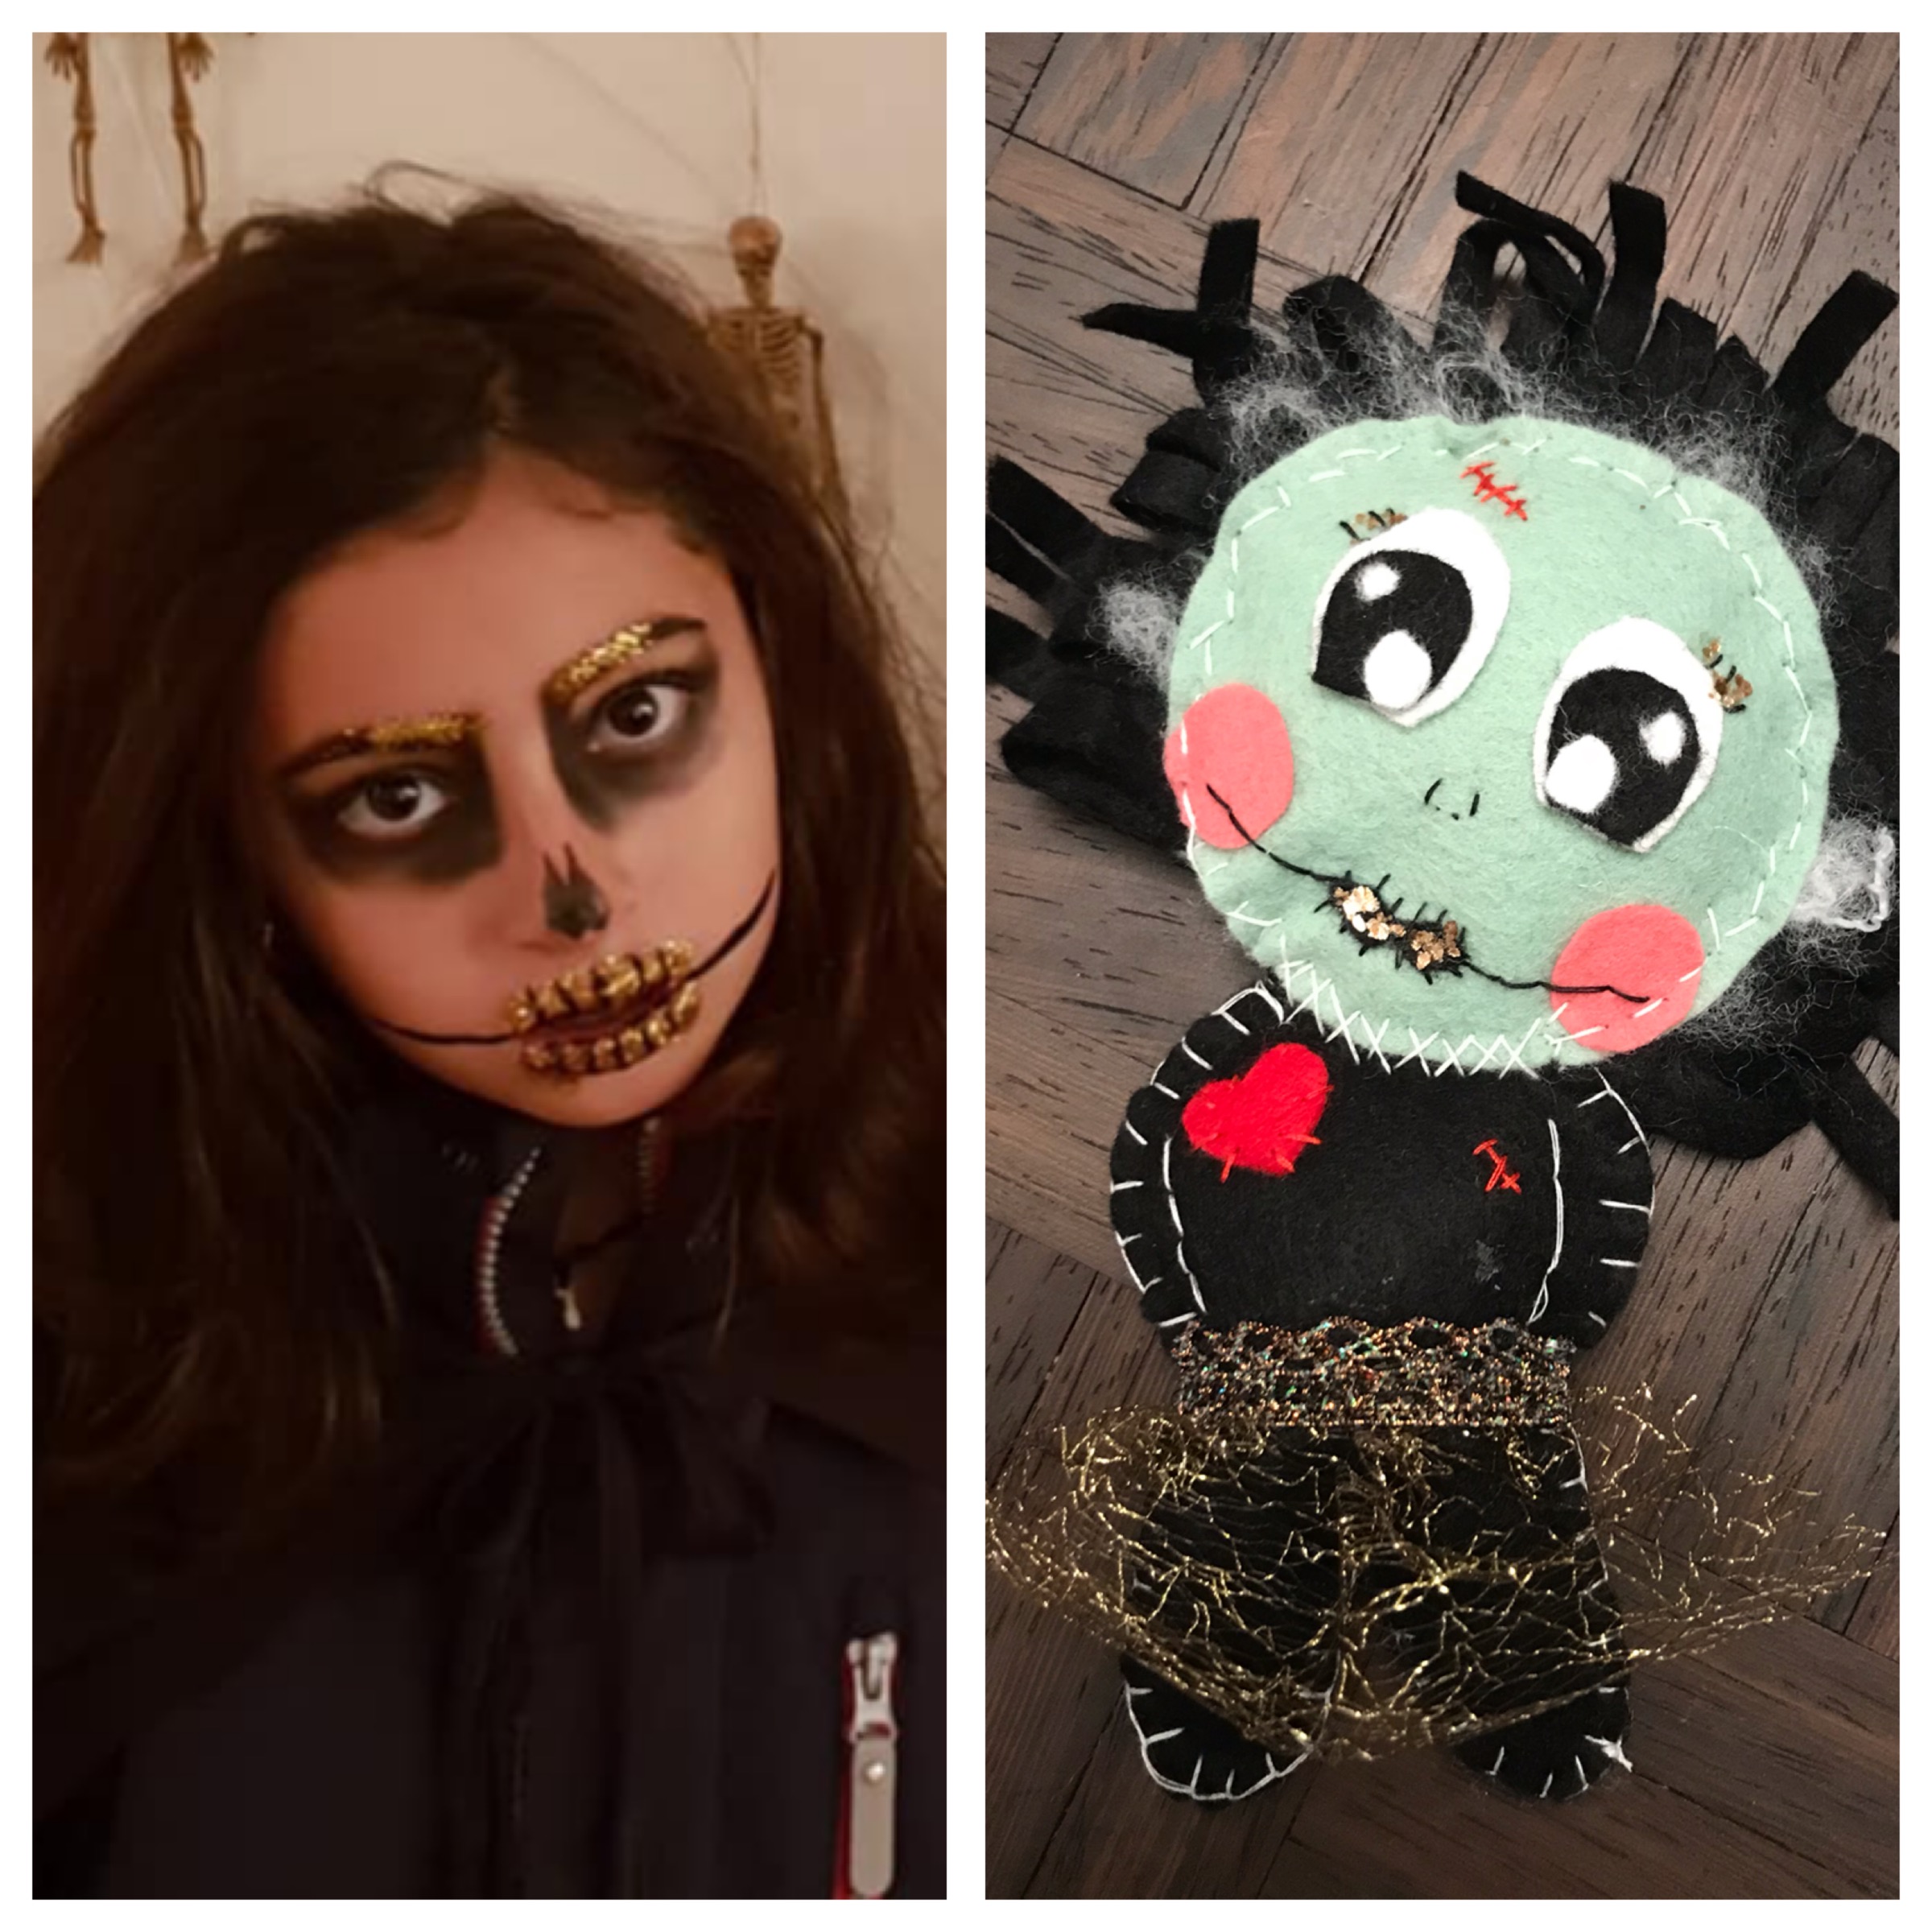 Monster girl for Halloween